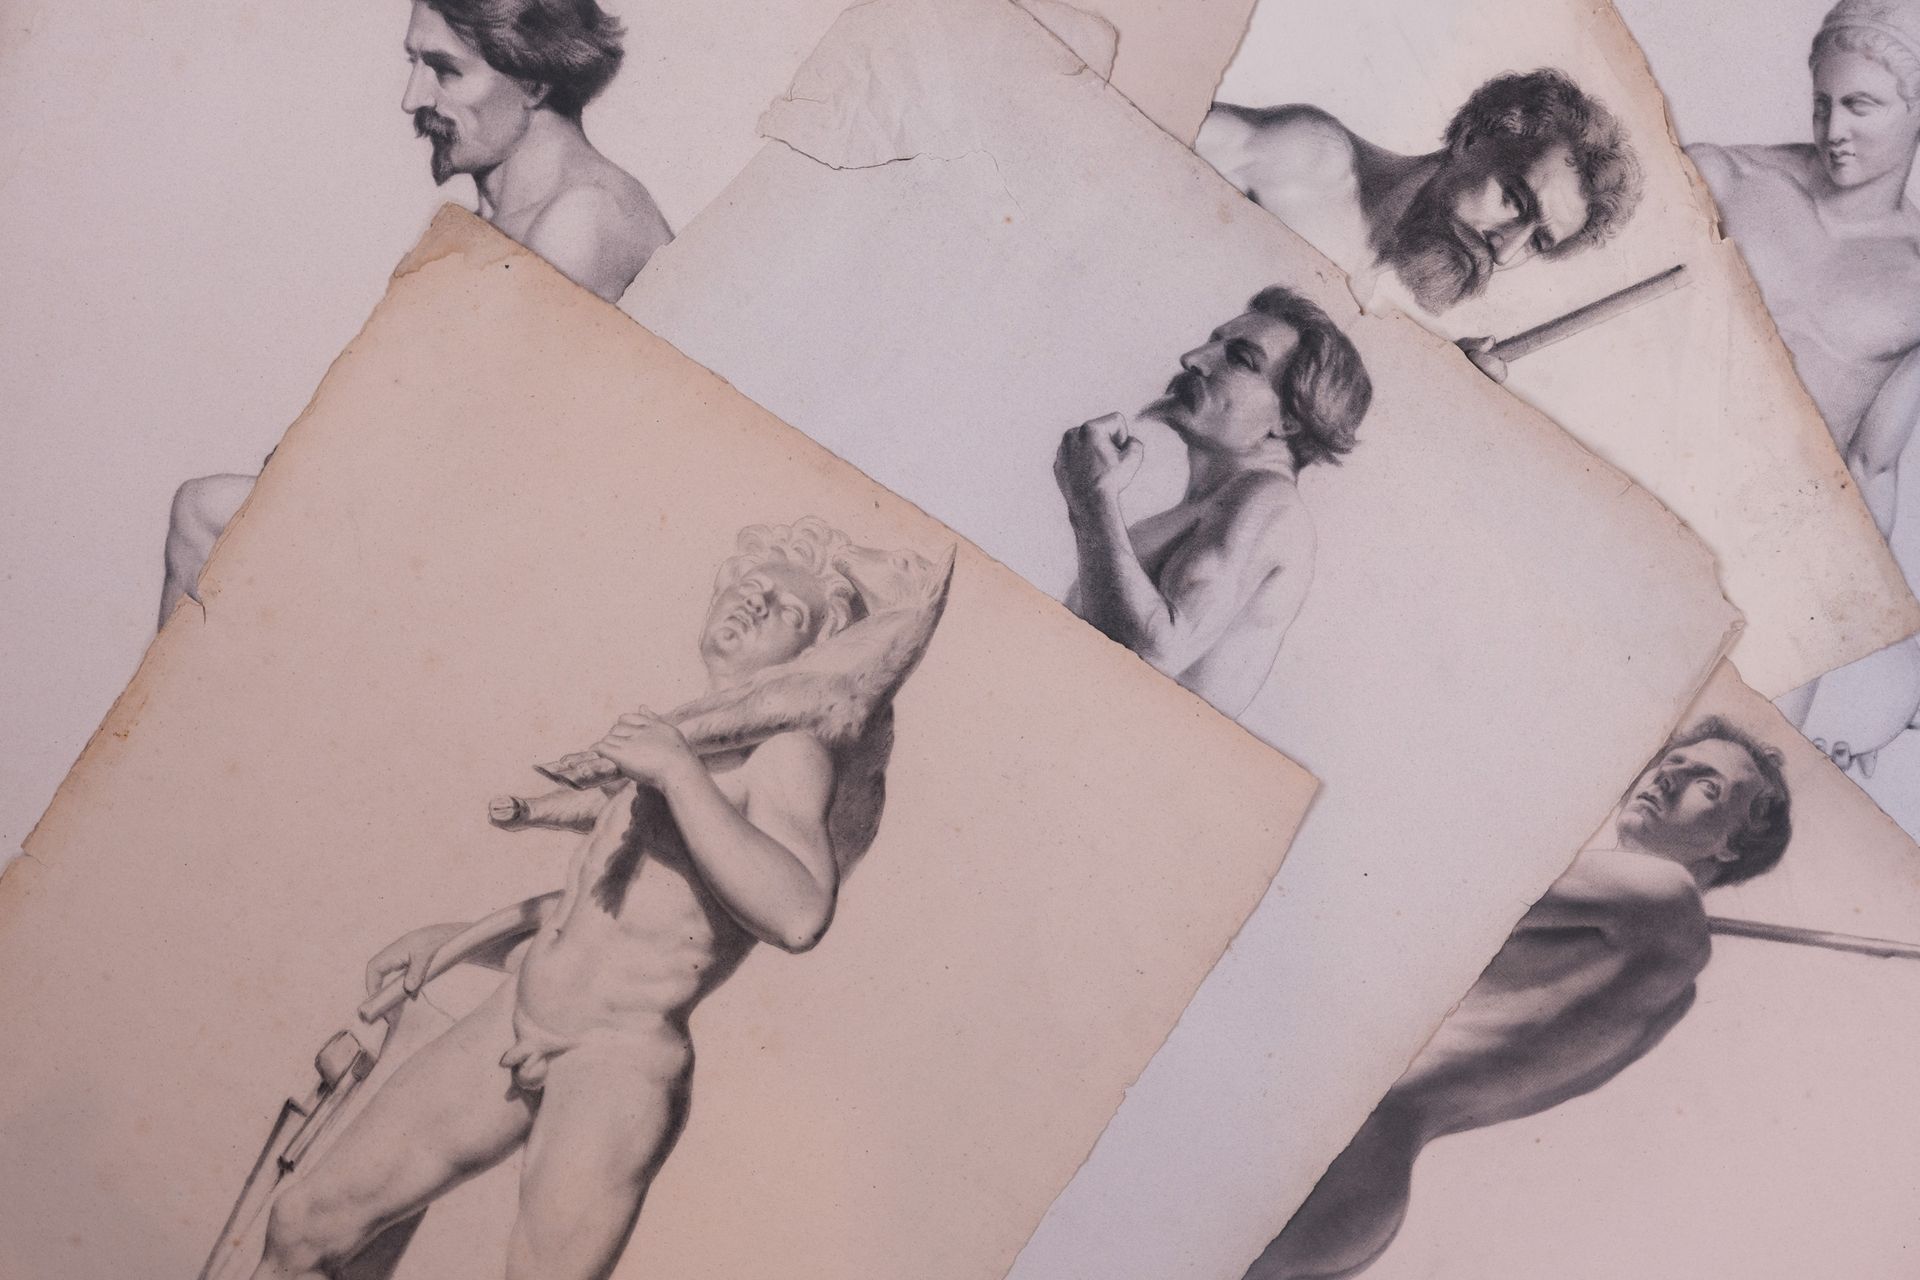 Null 孤独的人

9幅男性裸体研究 1852-1853年

木板上的铅笔和炭笔画。

58 x 44厘米。